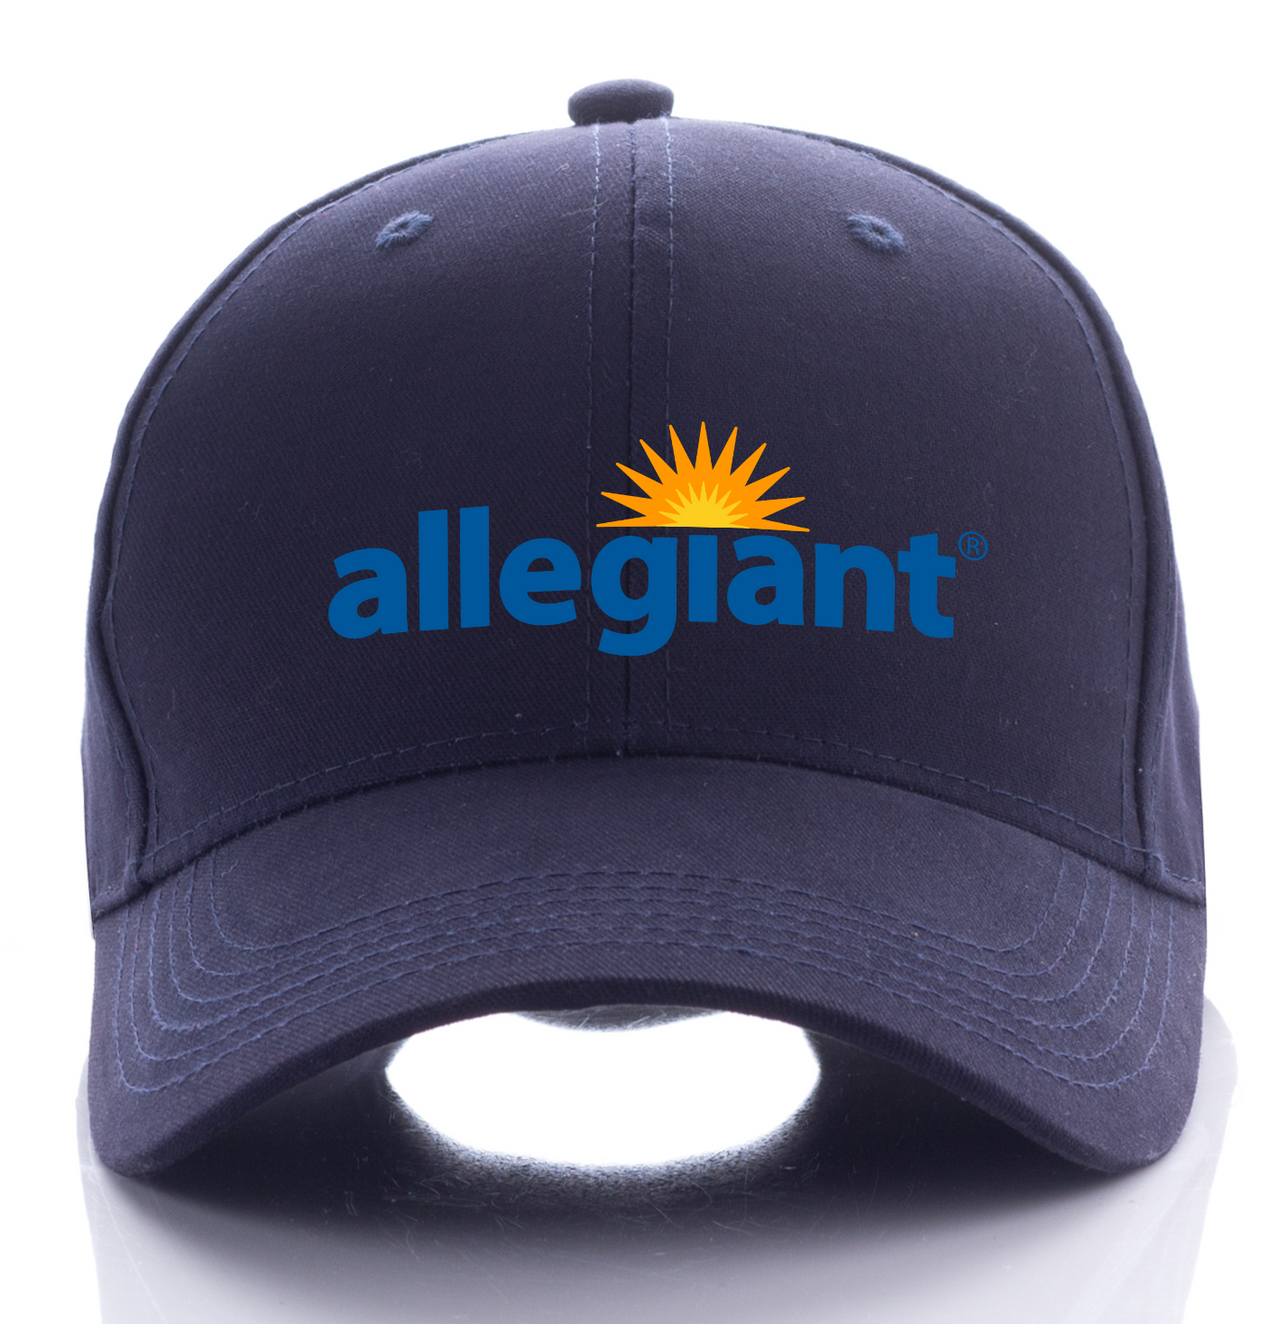 AIIEGIANT AIRLINE DESIGNED CAP